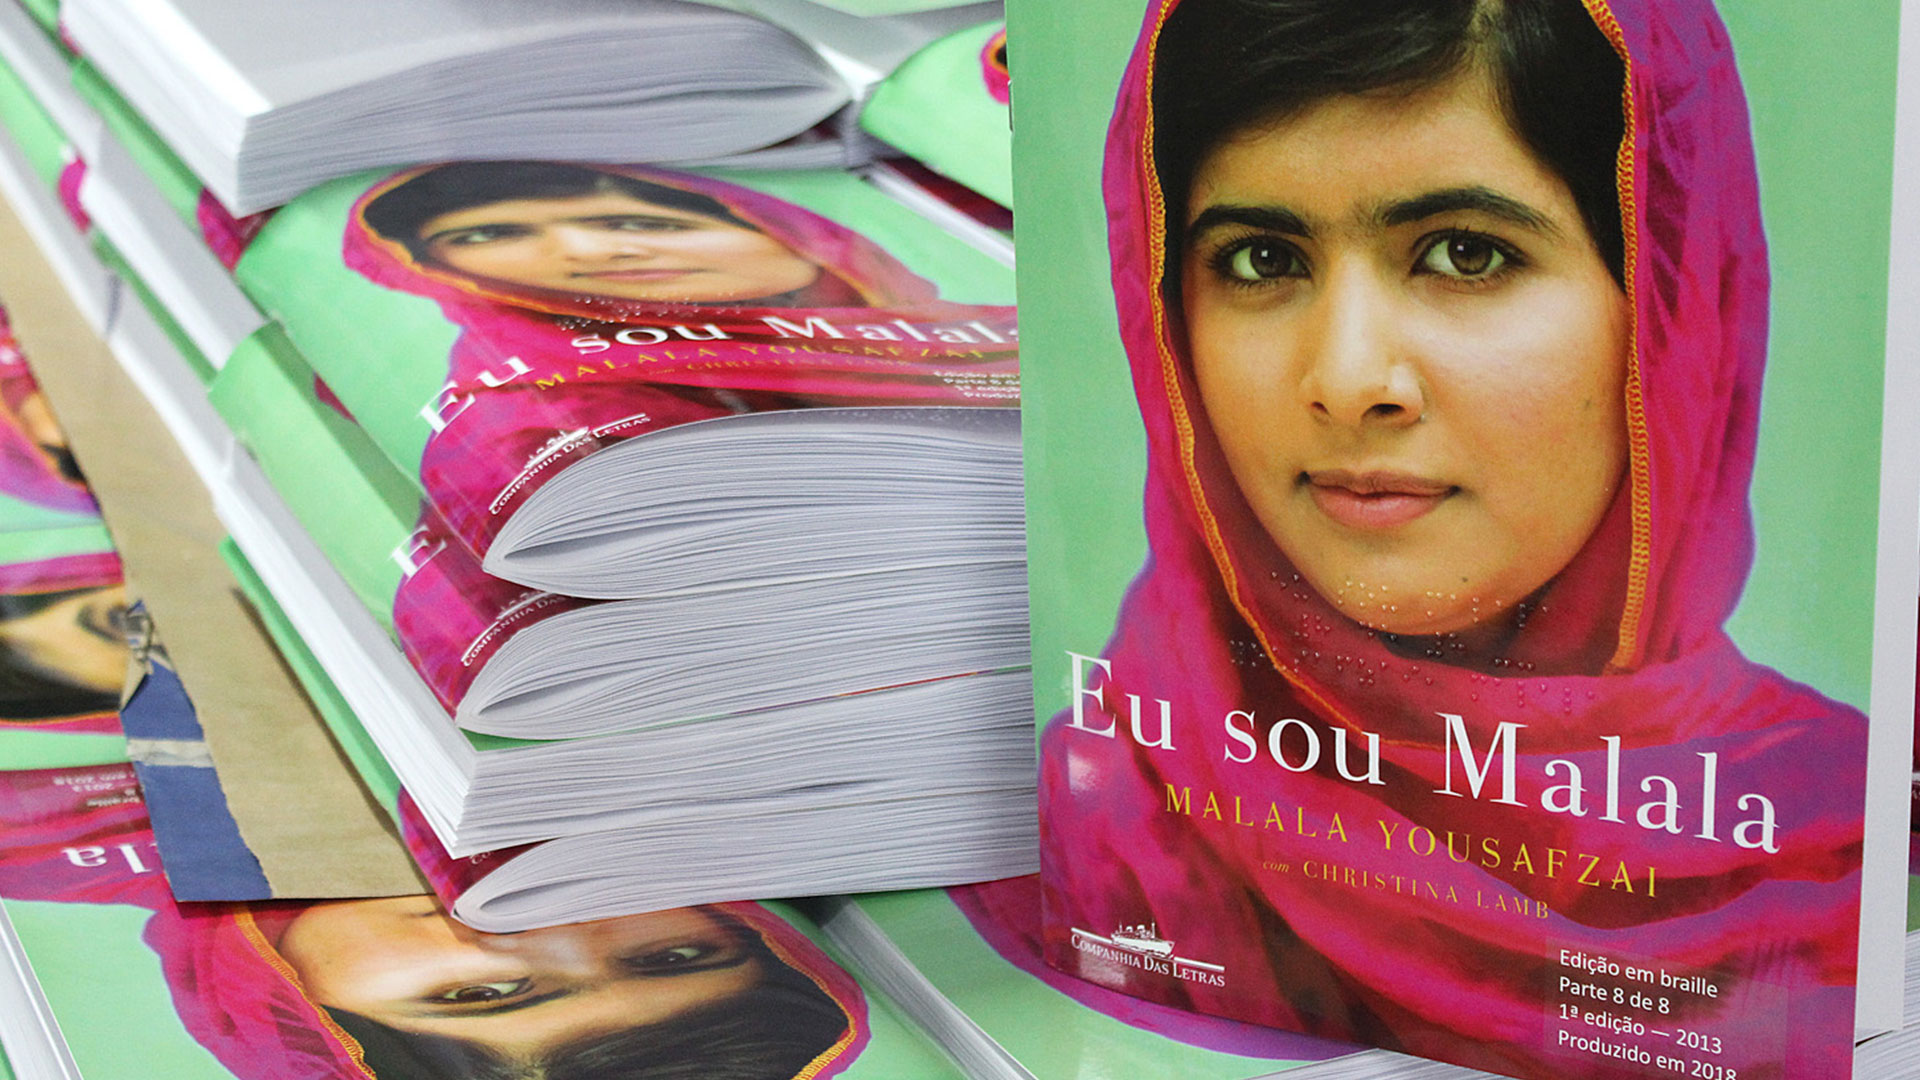 Capa do livro Eu sou Malala mostra a jovem paquistanesa Malala Yousfzai de lenço cor-de-rosa sobre um fundo verde.